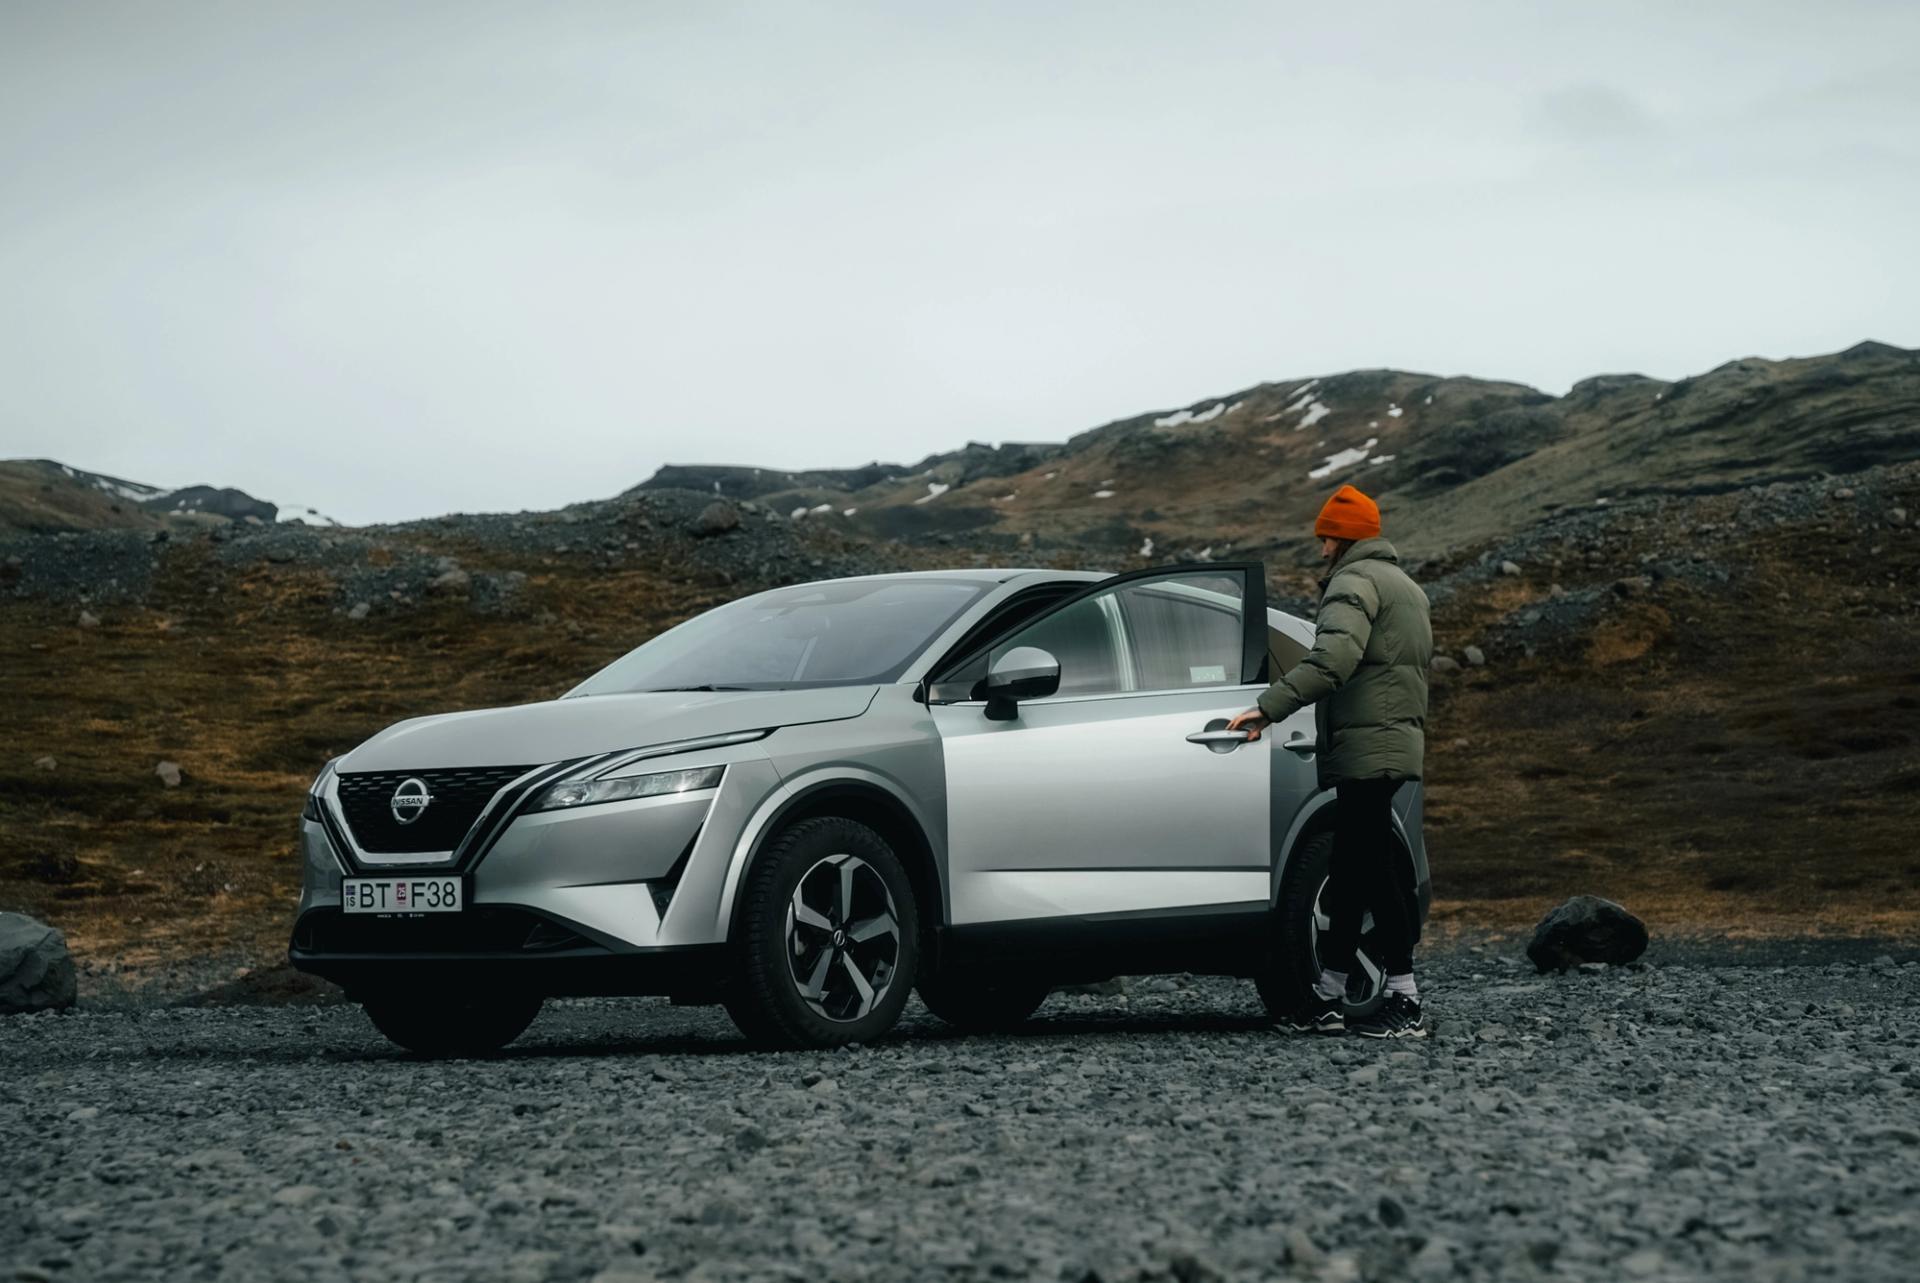 Grár Nissan Qashqai bílaleigubíll á íslandi